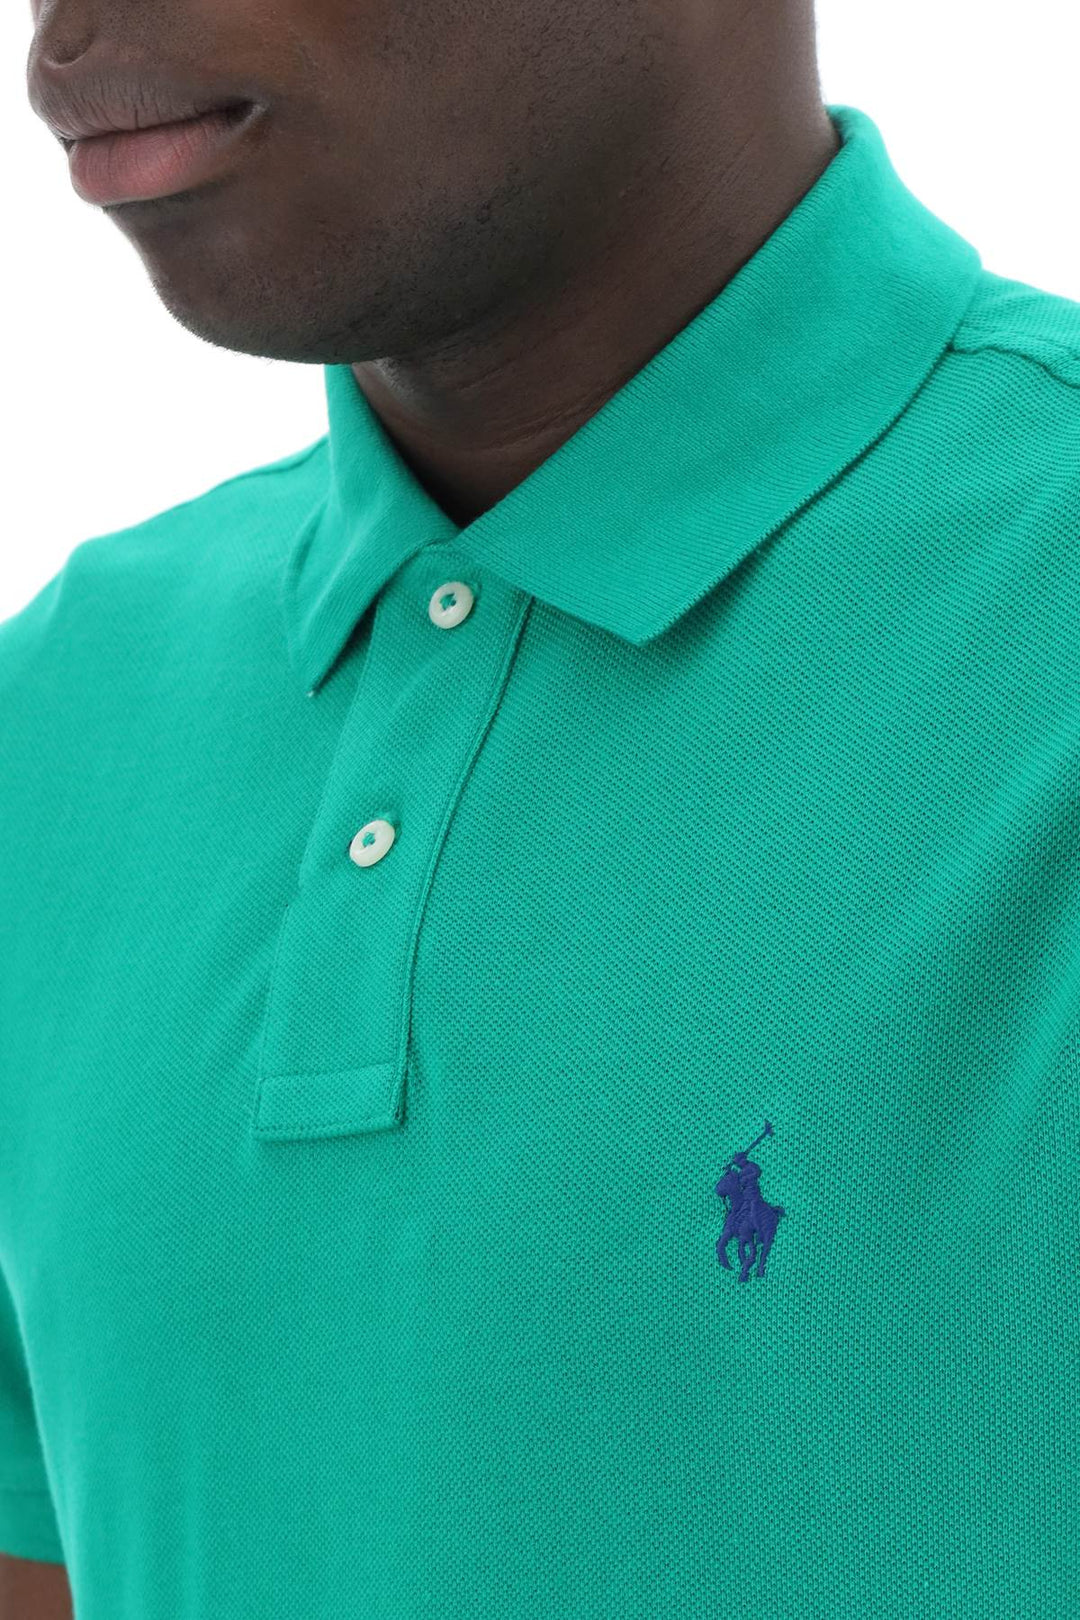 Polo Ralph Lauren Pique Cotton Polo Shirt   Verde